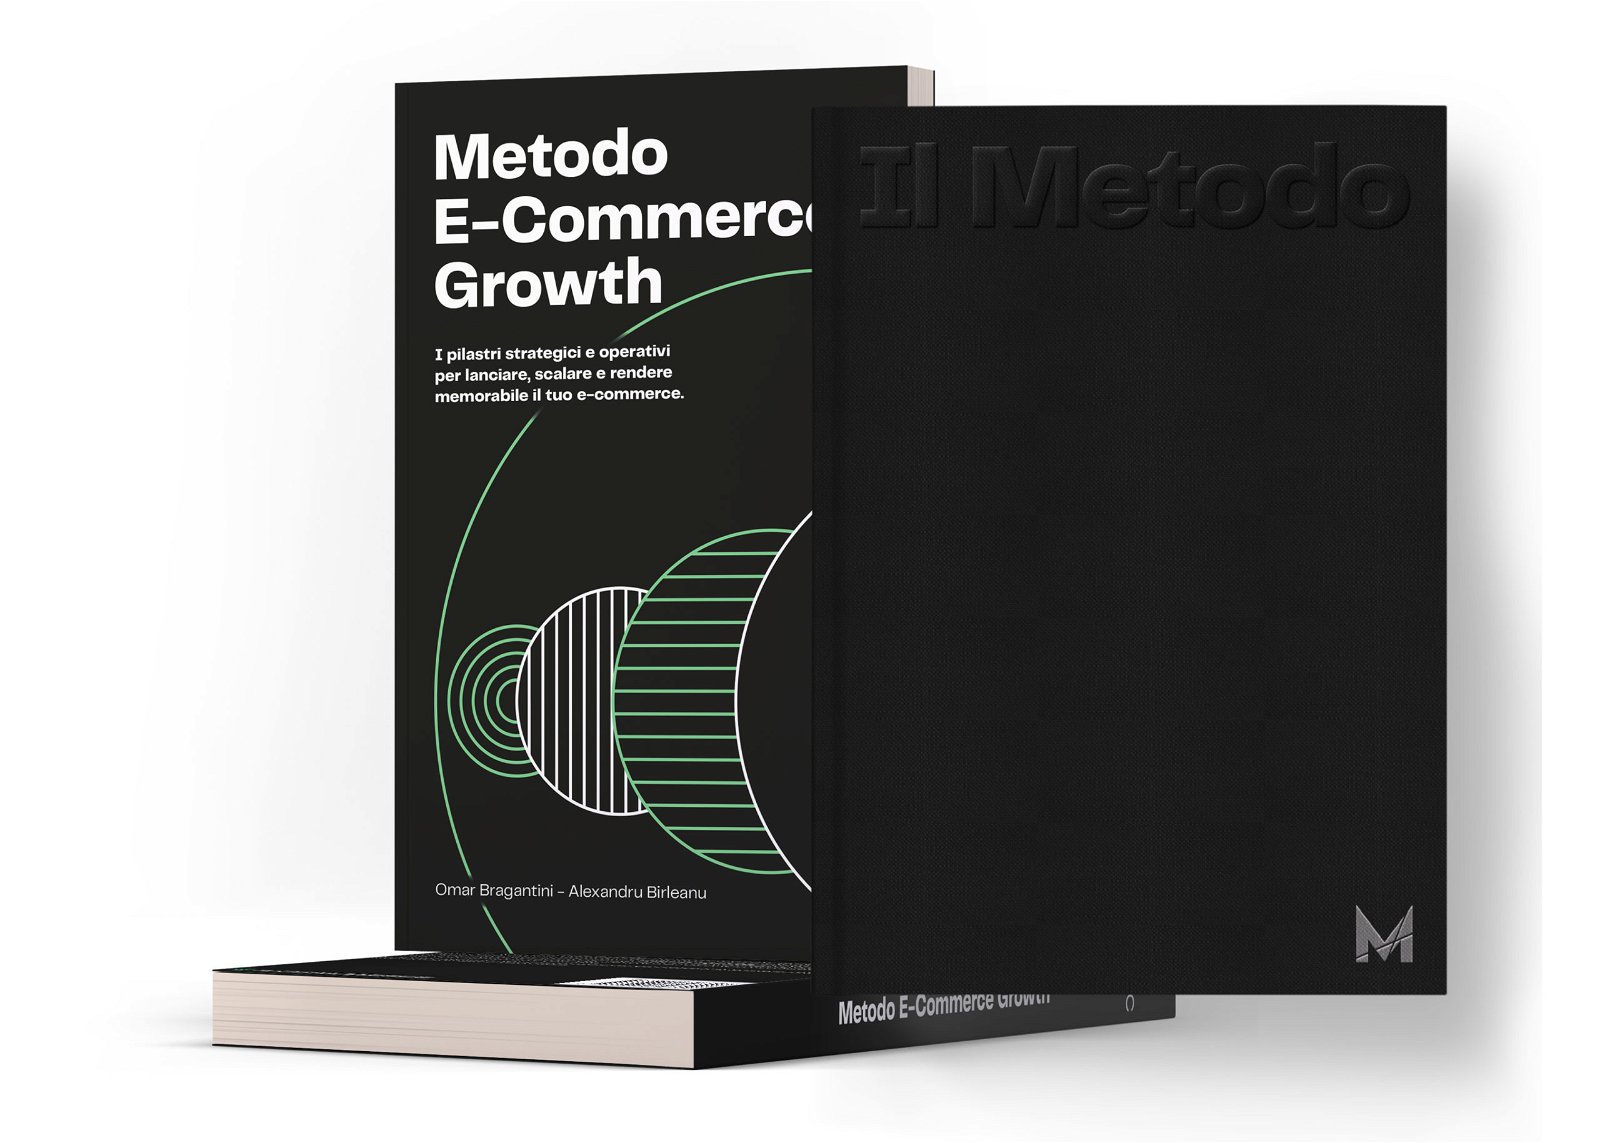 Lancio Metodo Marketers (new version) 51